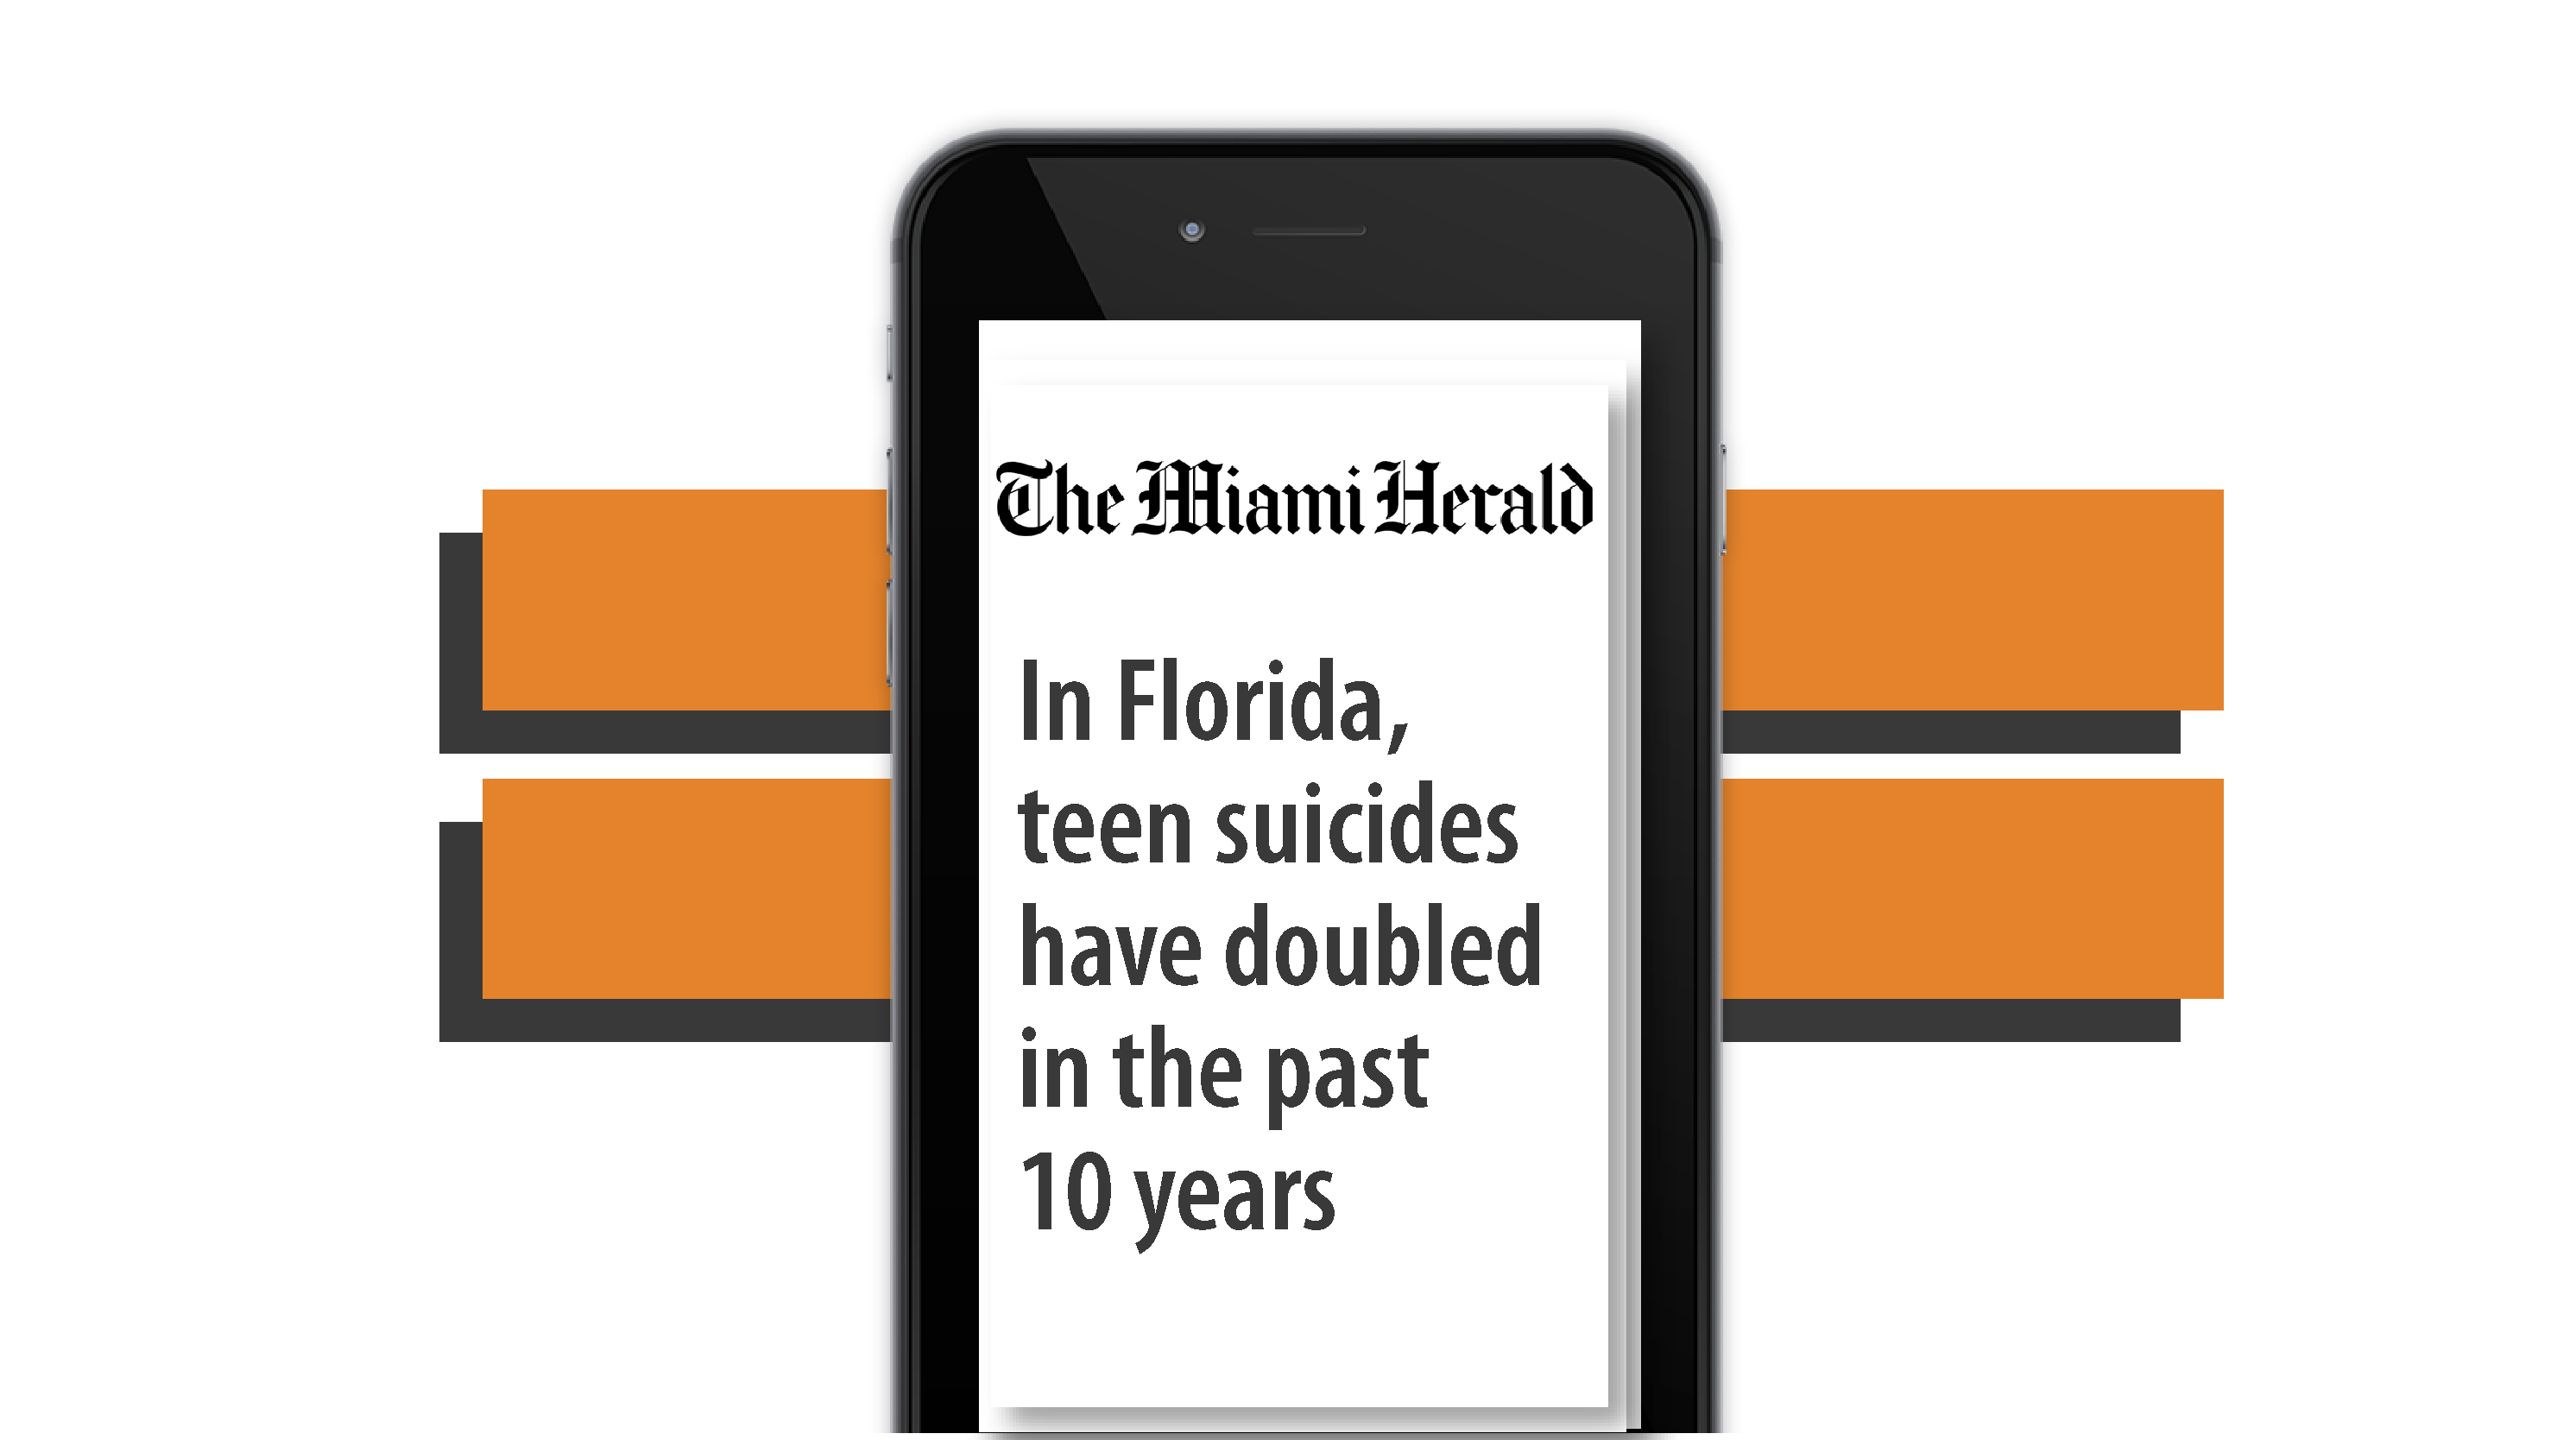 Kognito at Florida in The Miami Herald